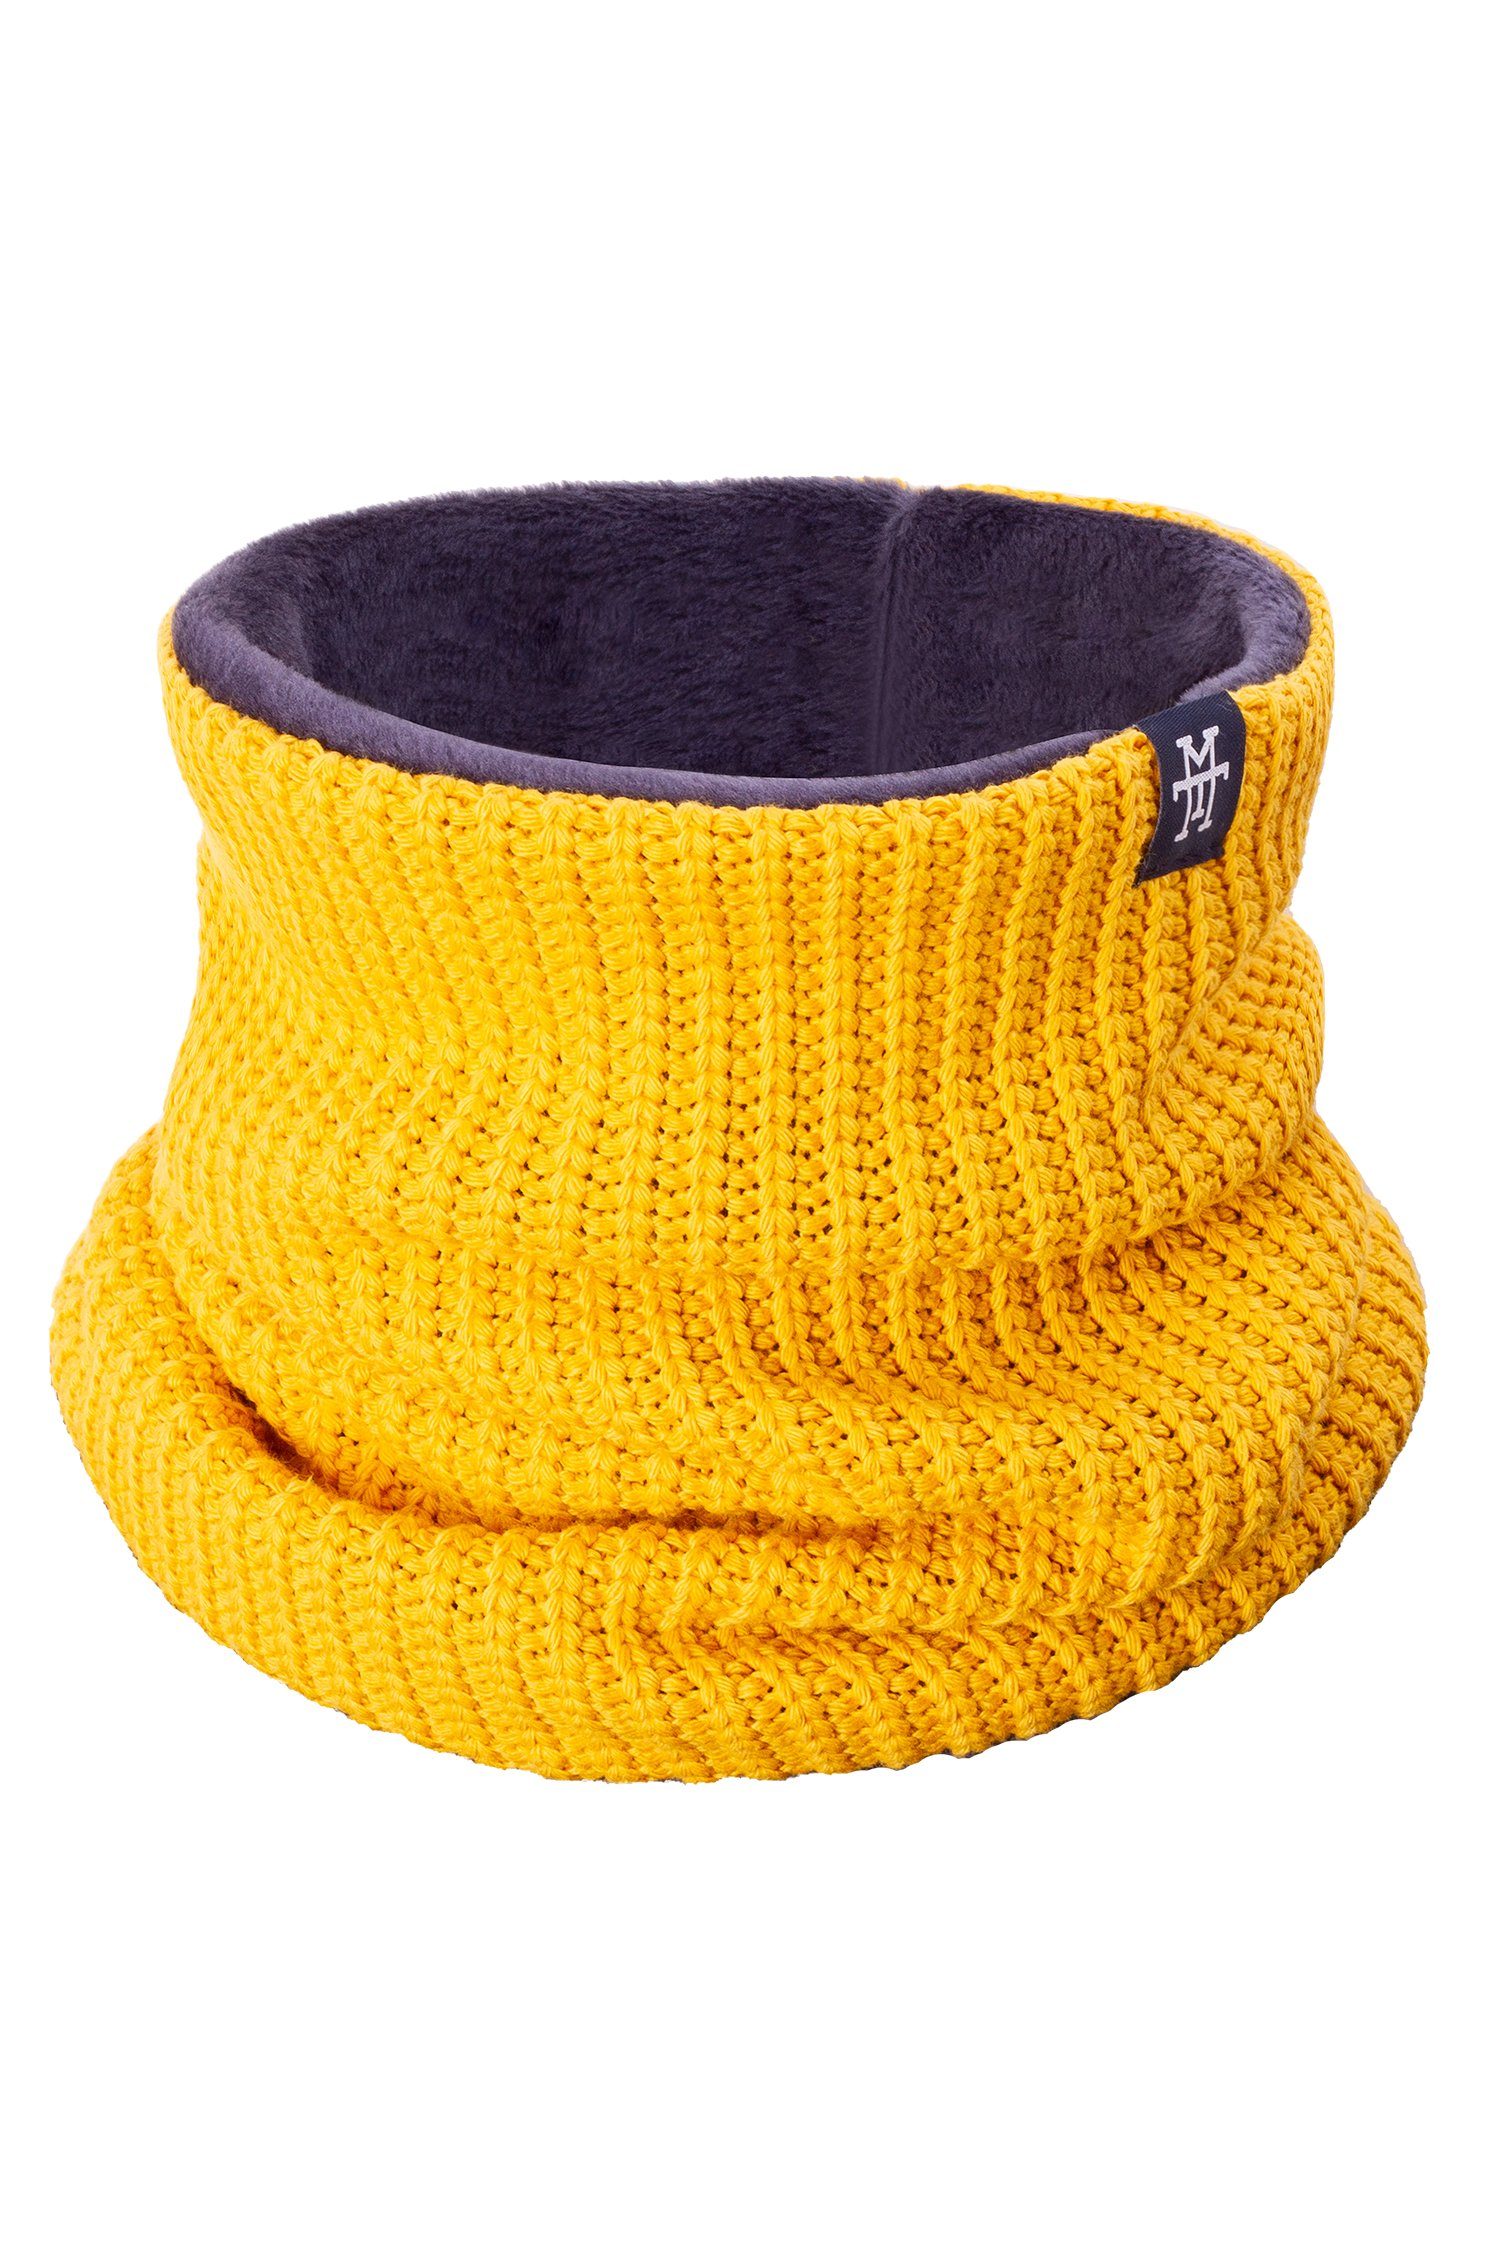 Manufaktur13 Loop Knit Neckwarmer - Schlauchschal, Halstuch, Halsschal, dehnbar/flexibel Mustard